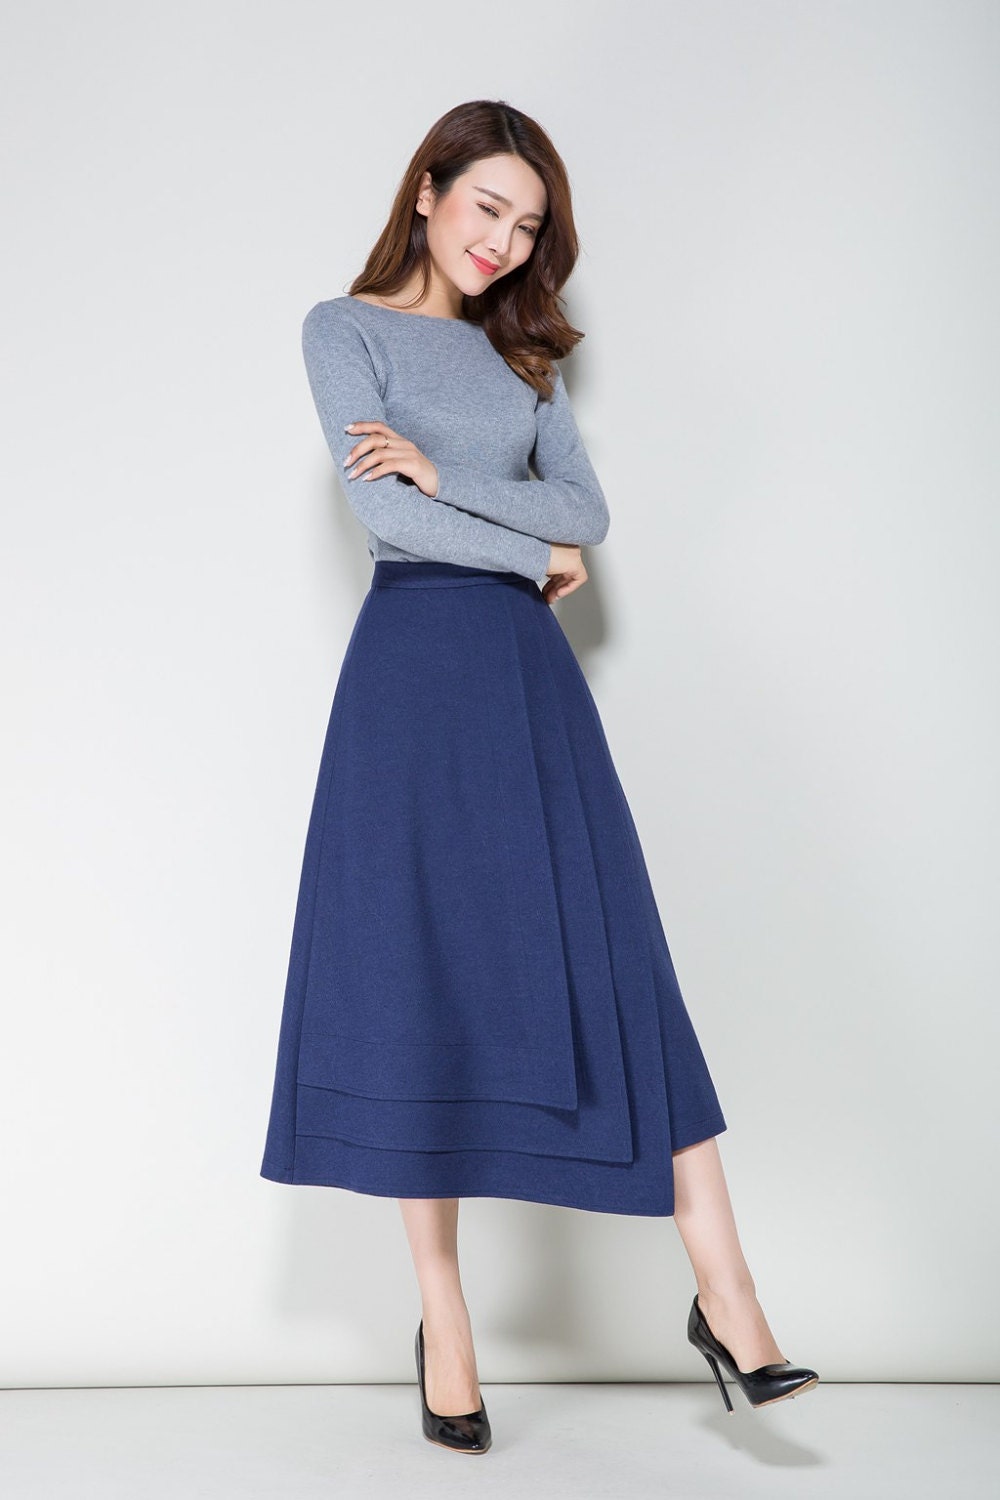 Blue skirt wool skirt winter skirt tiered skirt fitted | Etsy